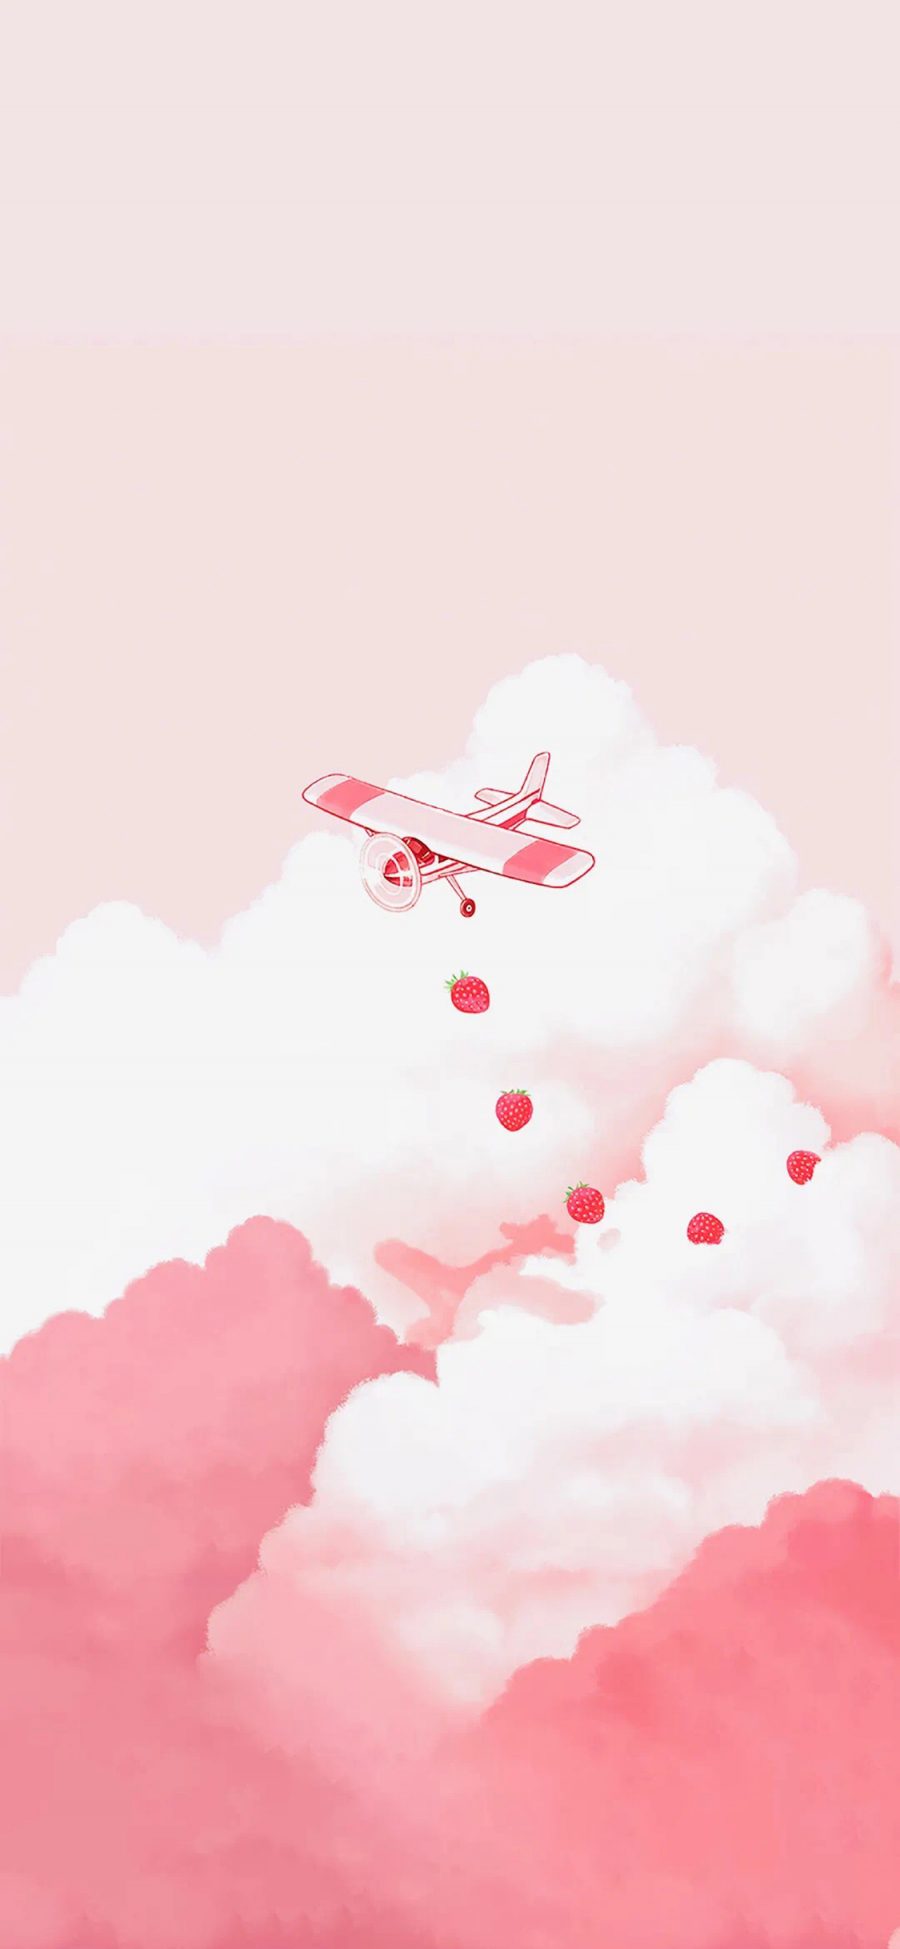 [2436×1125]云朵 飞机 粉色 草莓 苹果手机动漫壁纸图片